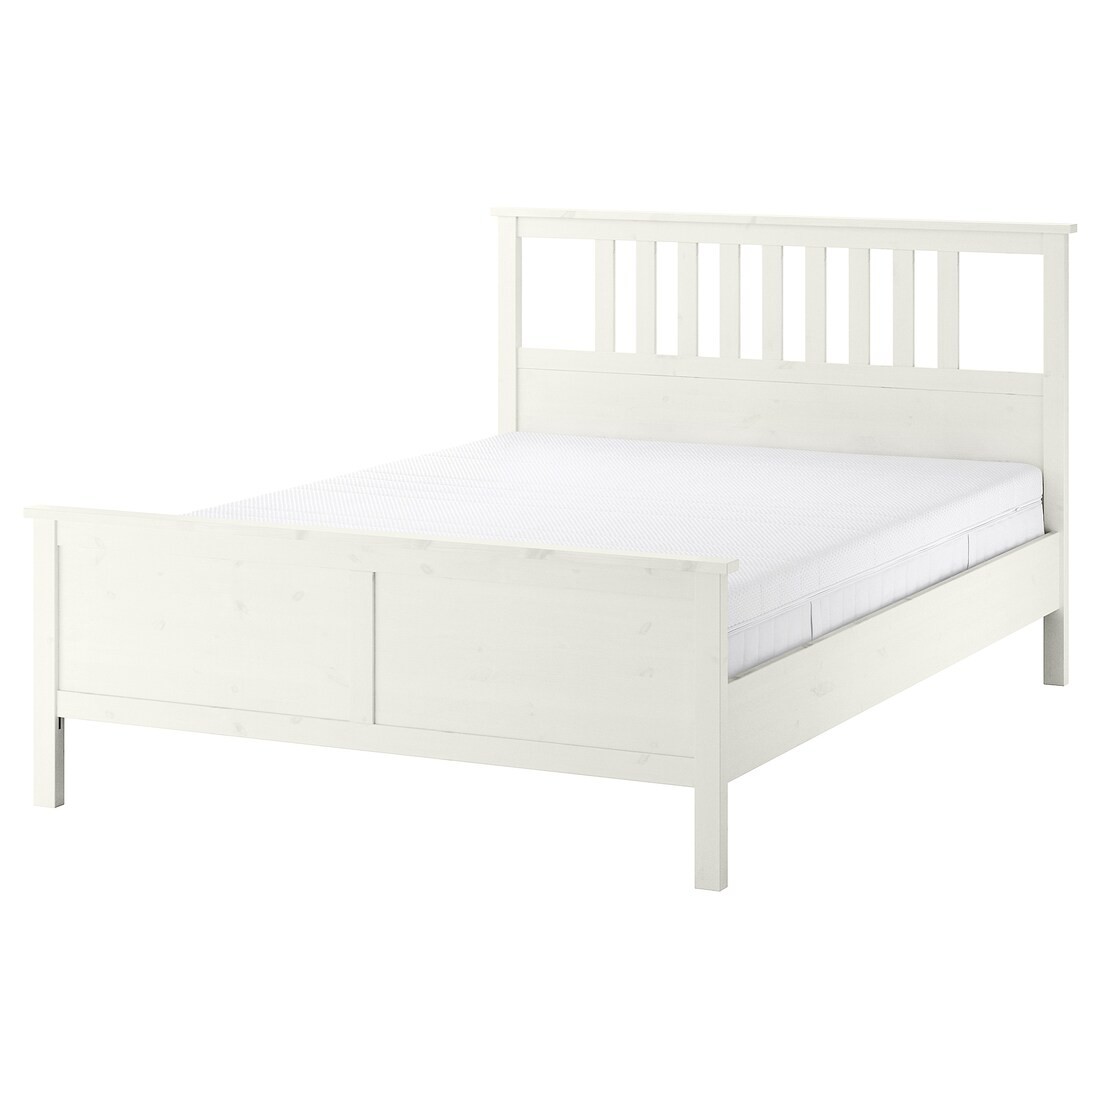 HEMNES Ліжко з матрацом, біла морилка / Åkrehamn середньої твердості, 160x200 см